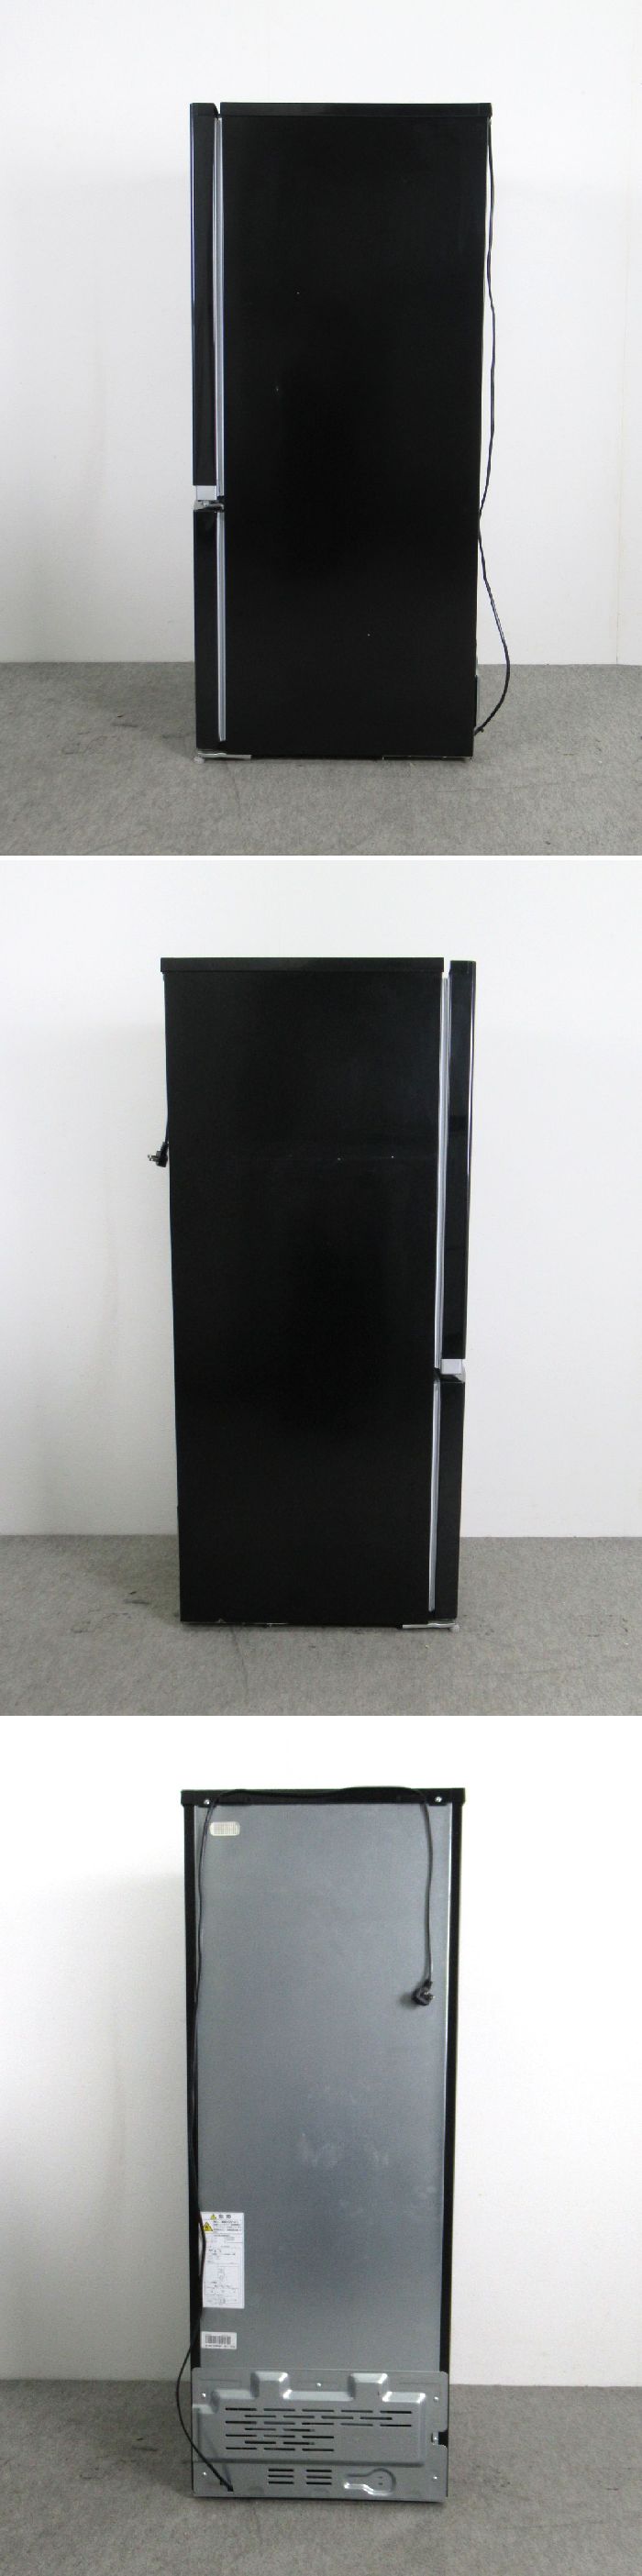 通販在庫あ送料無料！ 東芝 153L 2ドア冷凍冷蔵庫 GR-M15BS(K) ピュアブラック 2018年製 右開き スタイリッシュデザイン 100リットル～